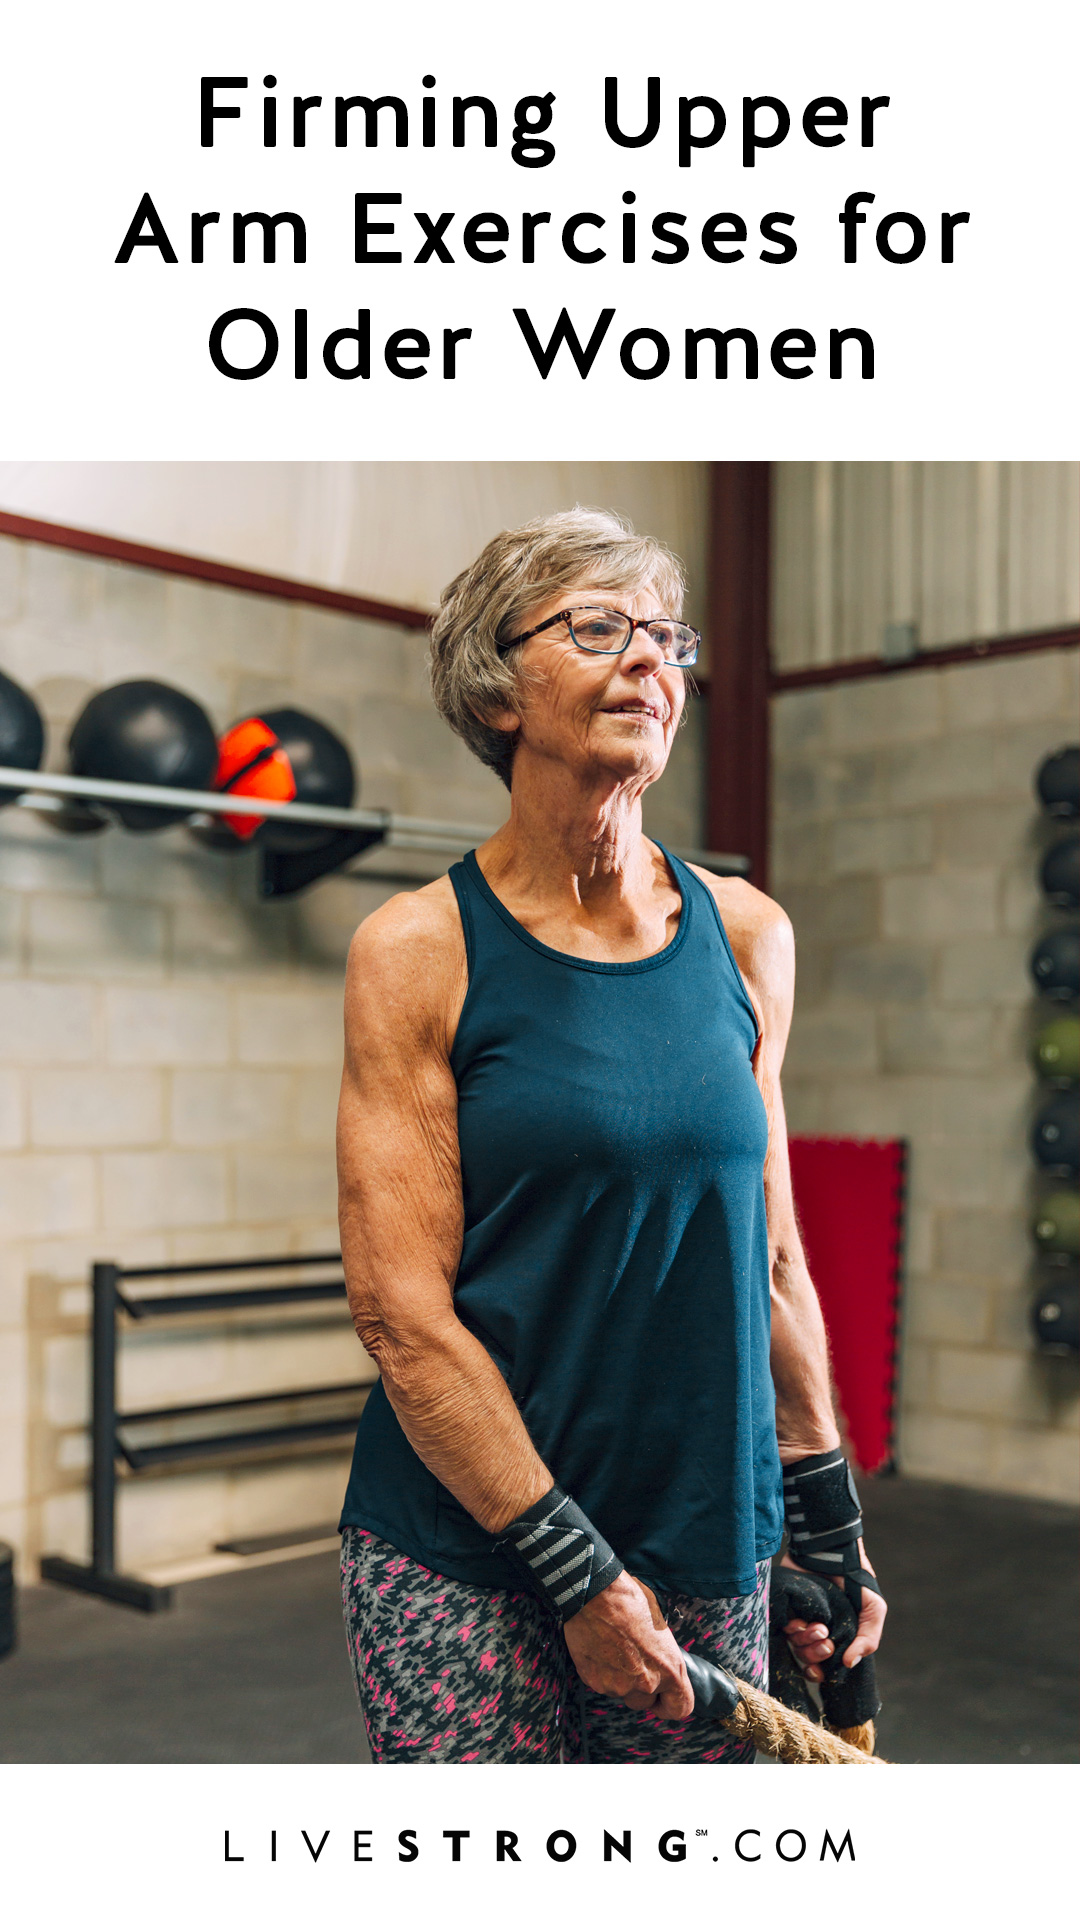 Firming Upper-Arm Exercises for Older Women